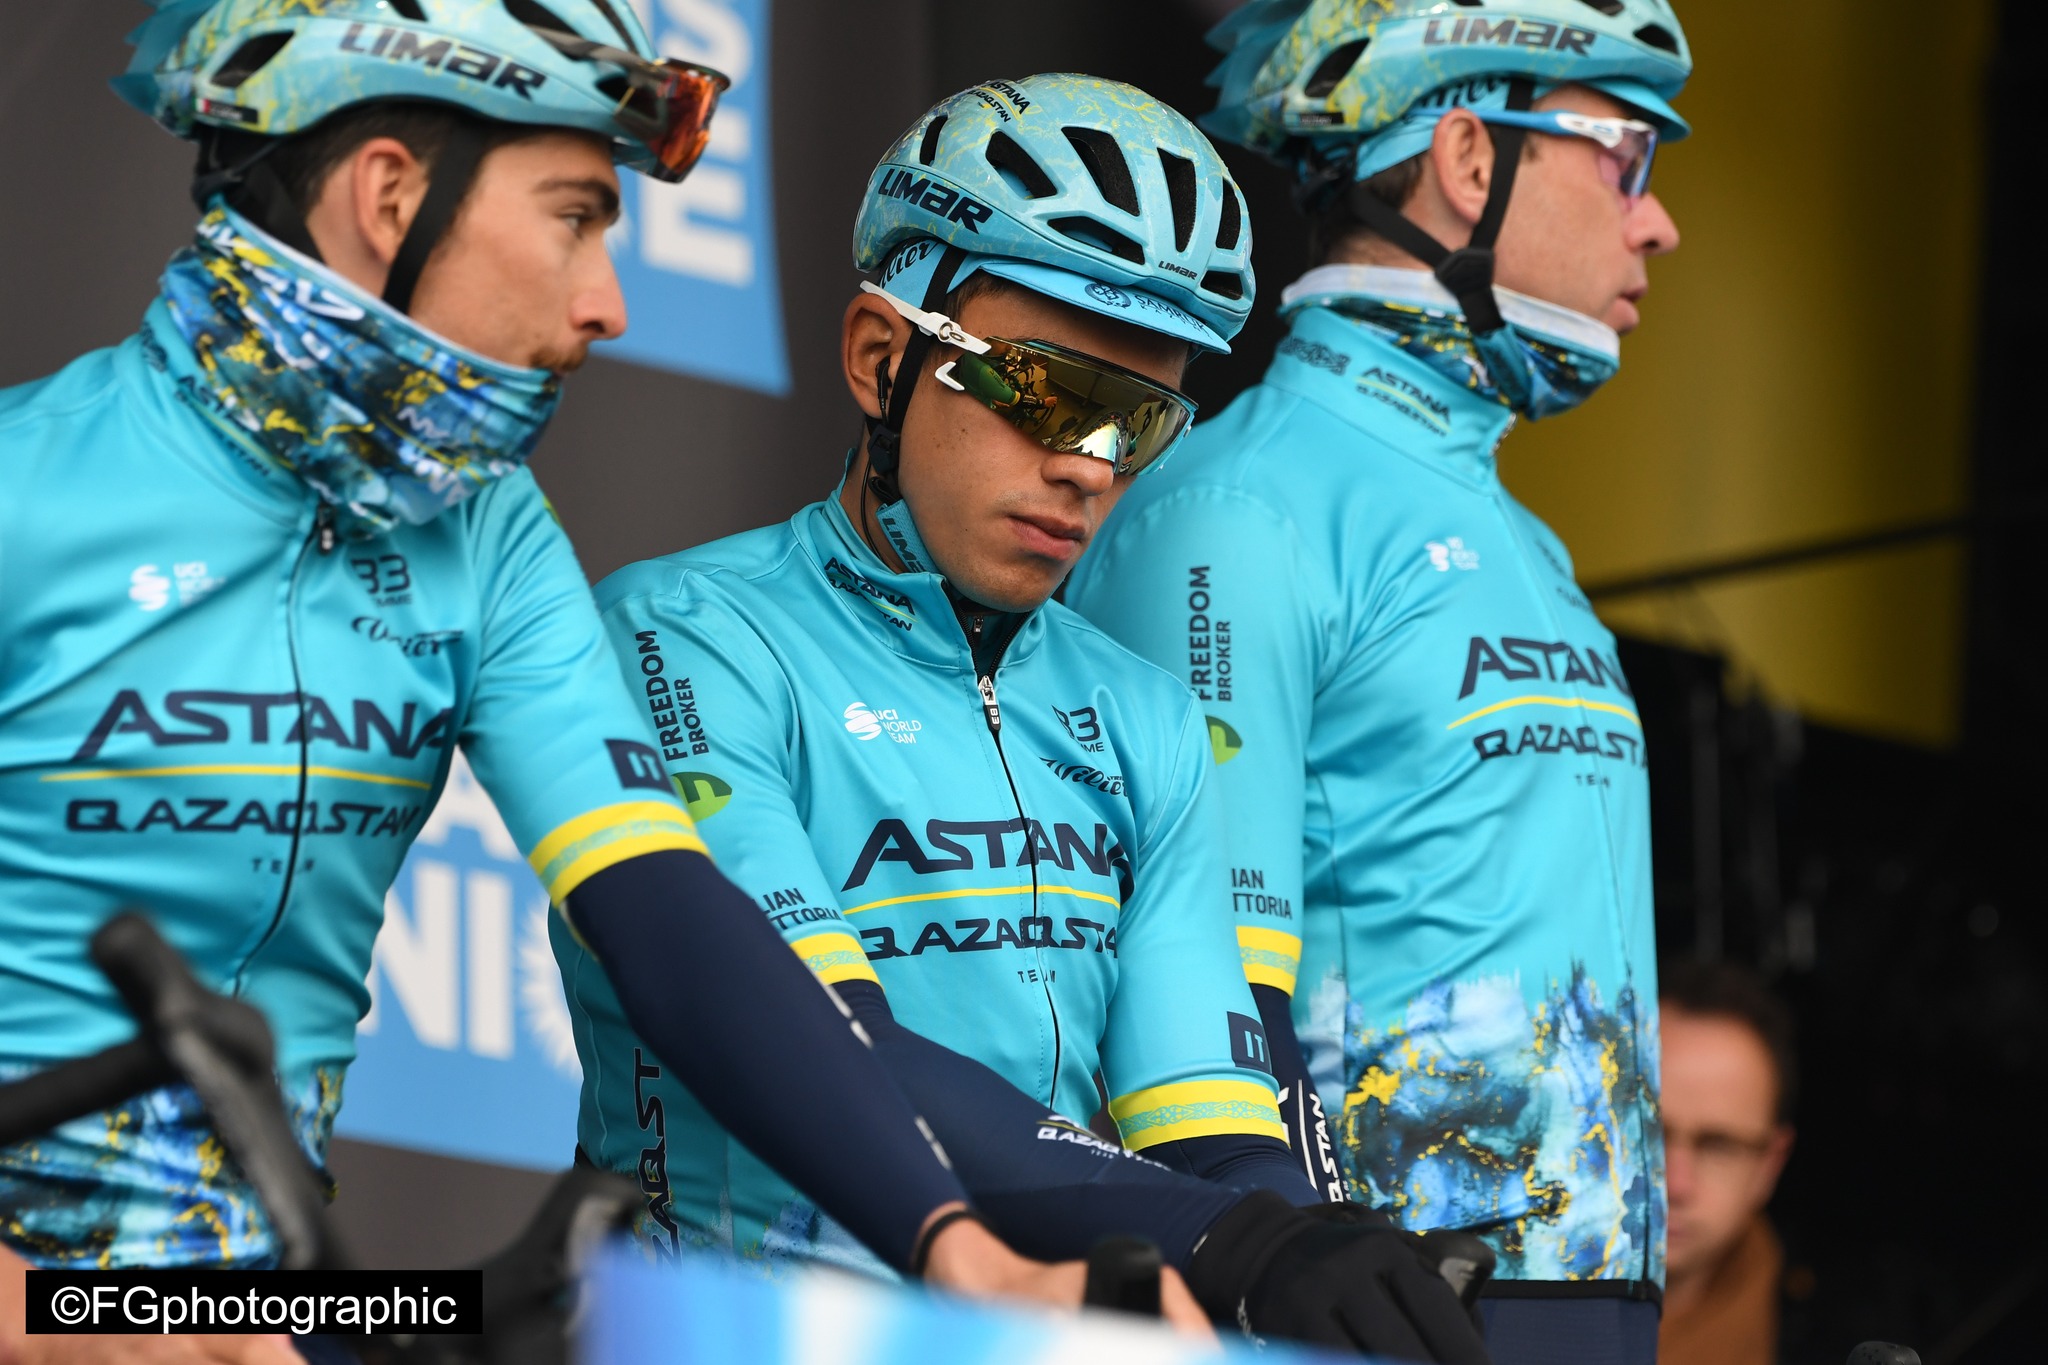 Classement UCI, Tudor passe à son tour Astana